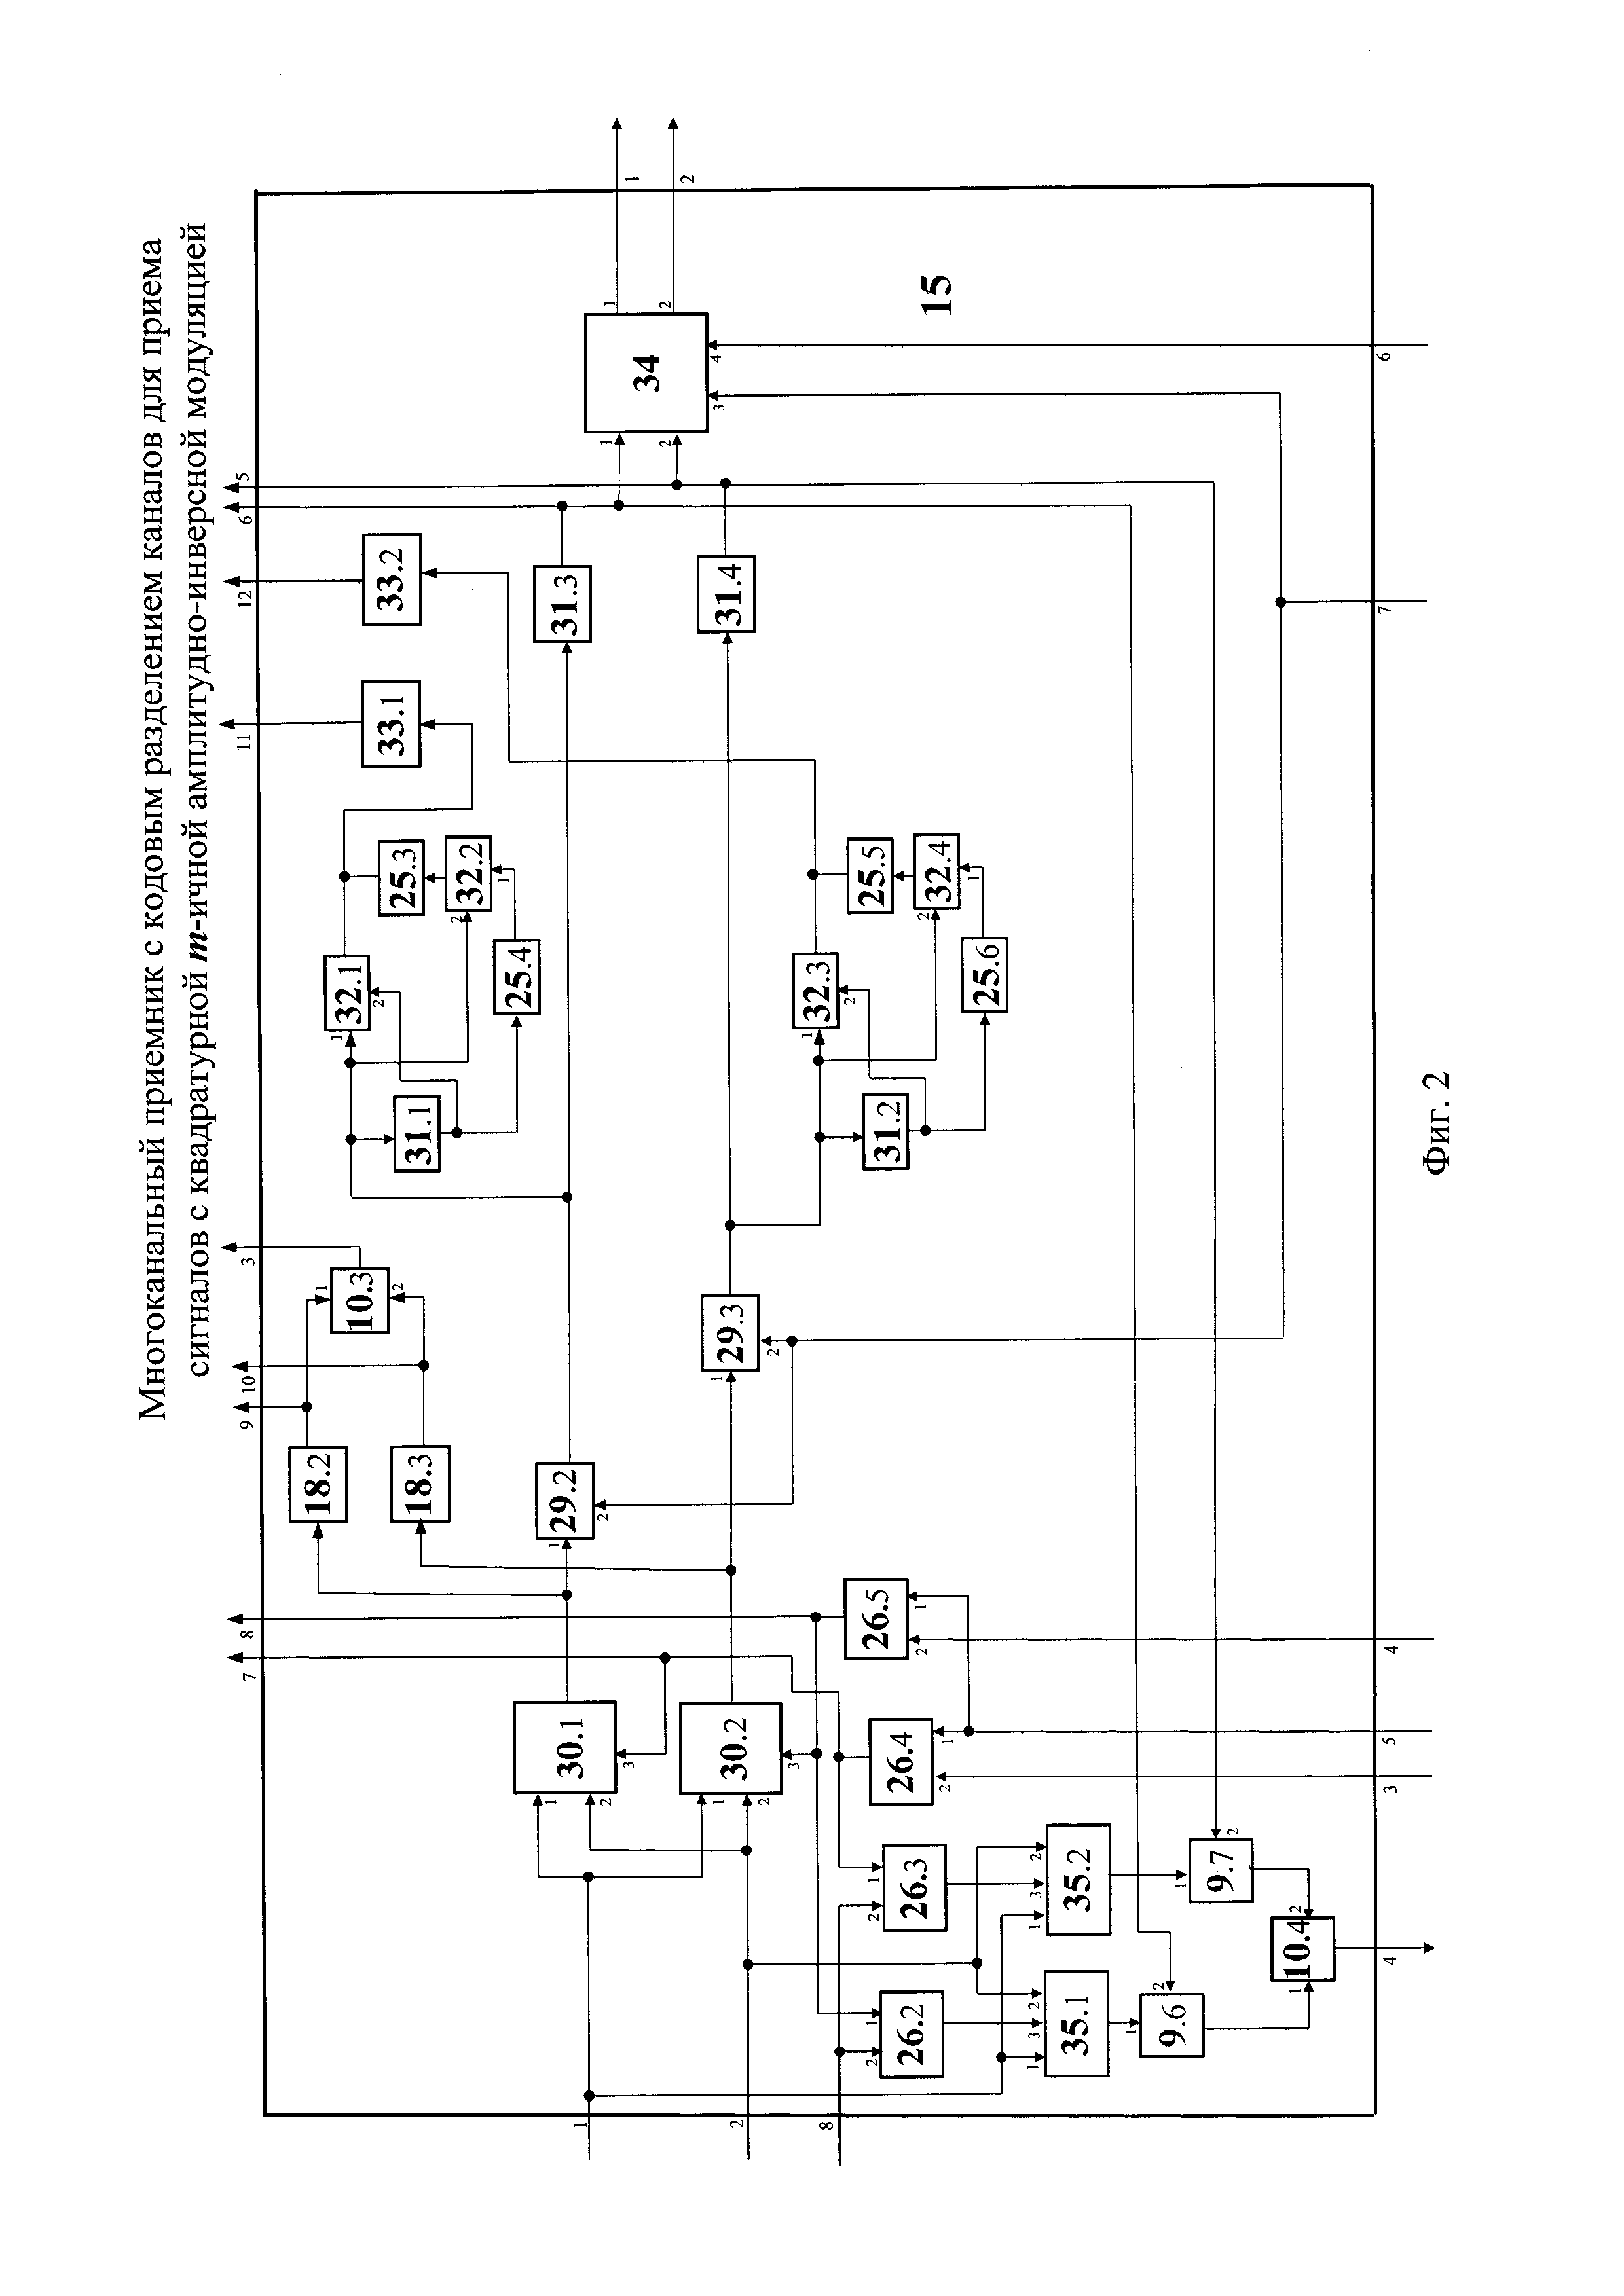 Многоканальный приемник с кодовым разделением каналов для приема сигналов с квадратурной m-ичной амплитудно-инверсной модуляцией